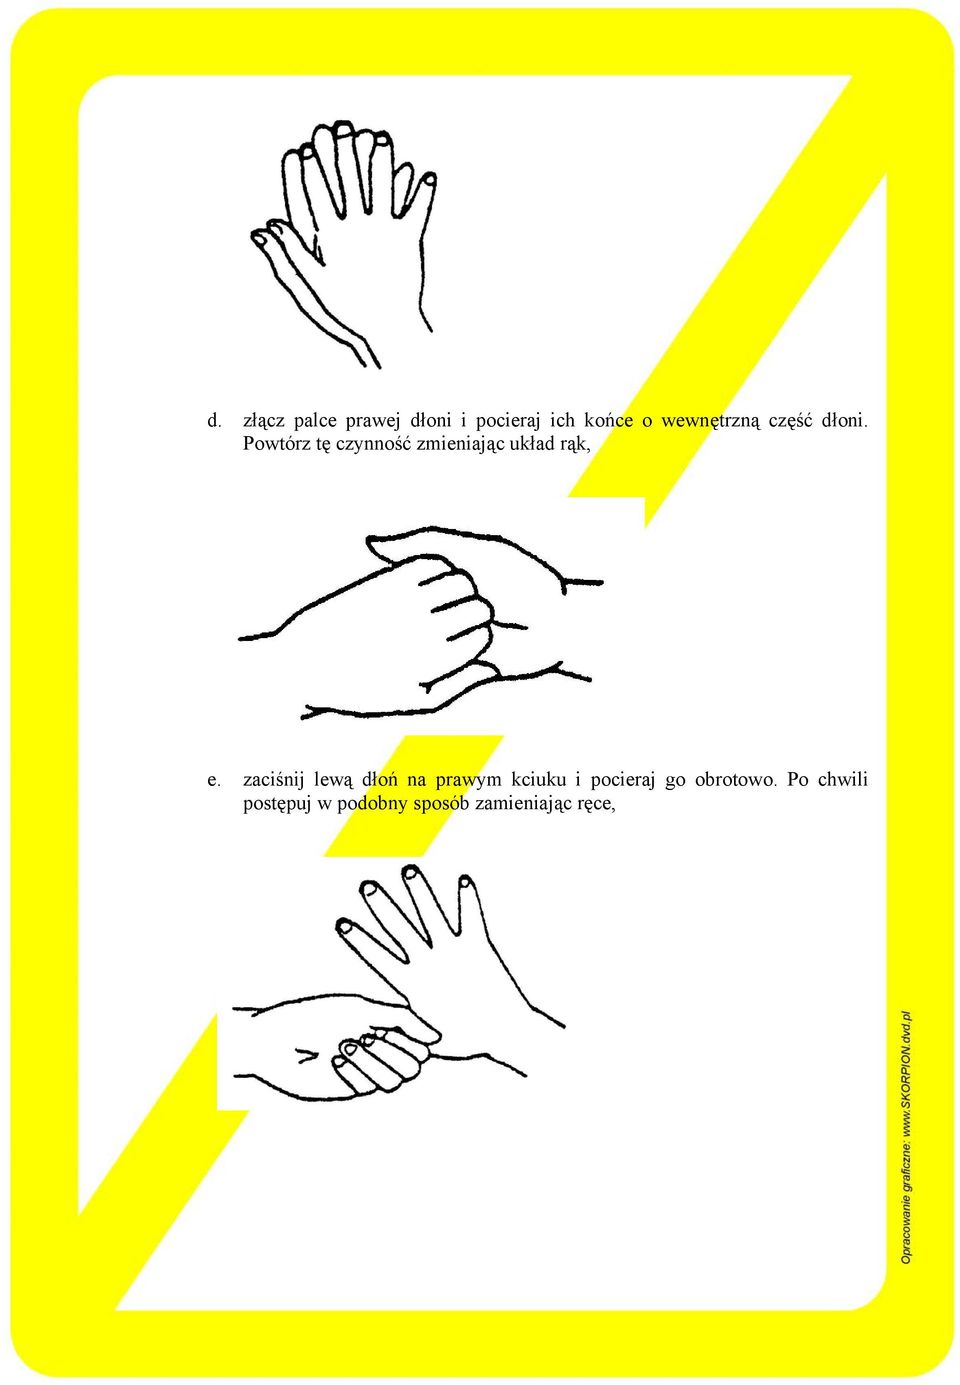 Powtórz tę czynność zmieniając układ rąk, e.